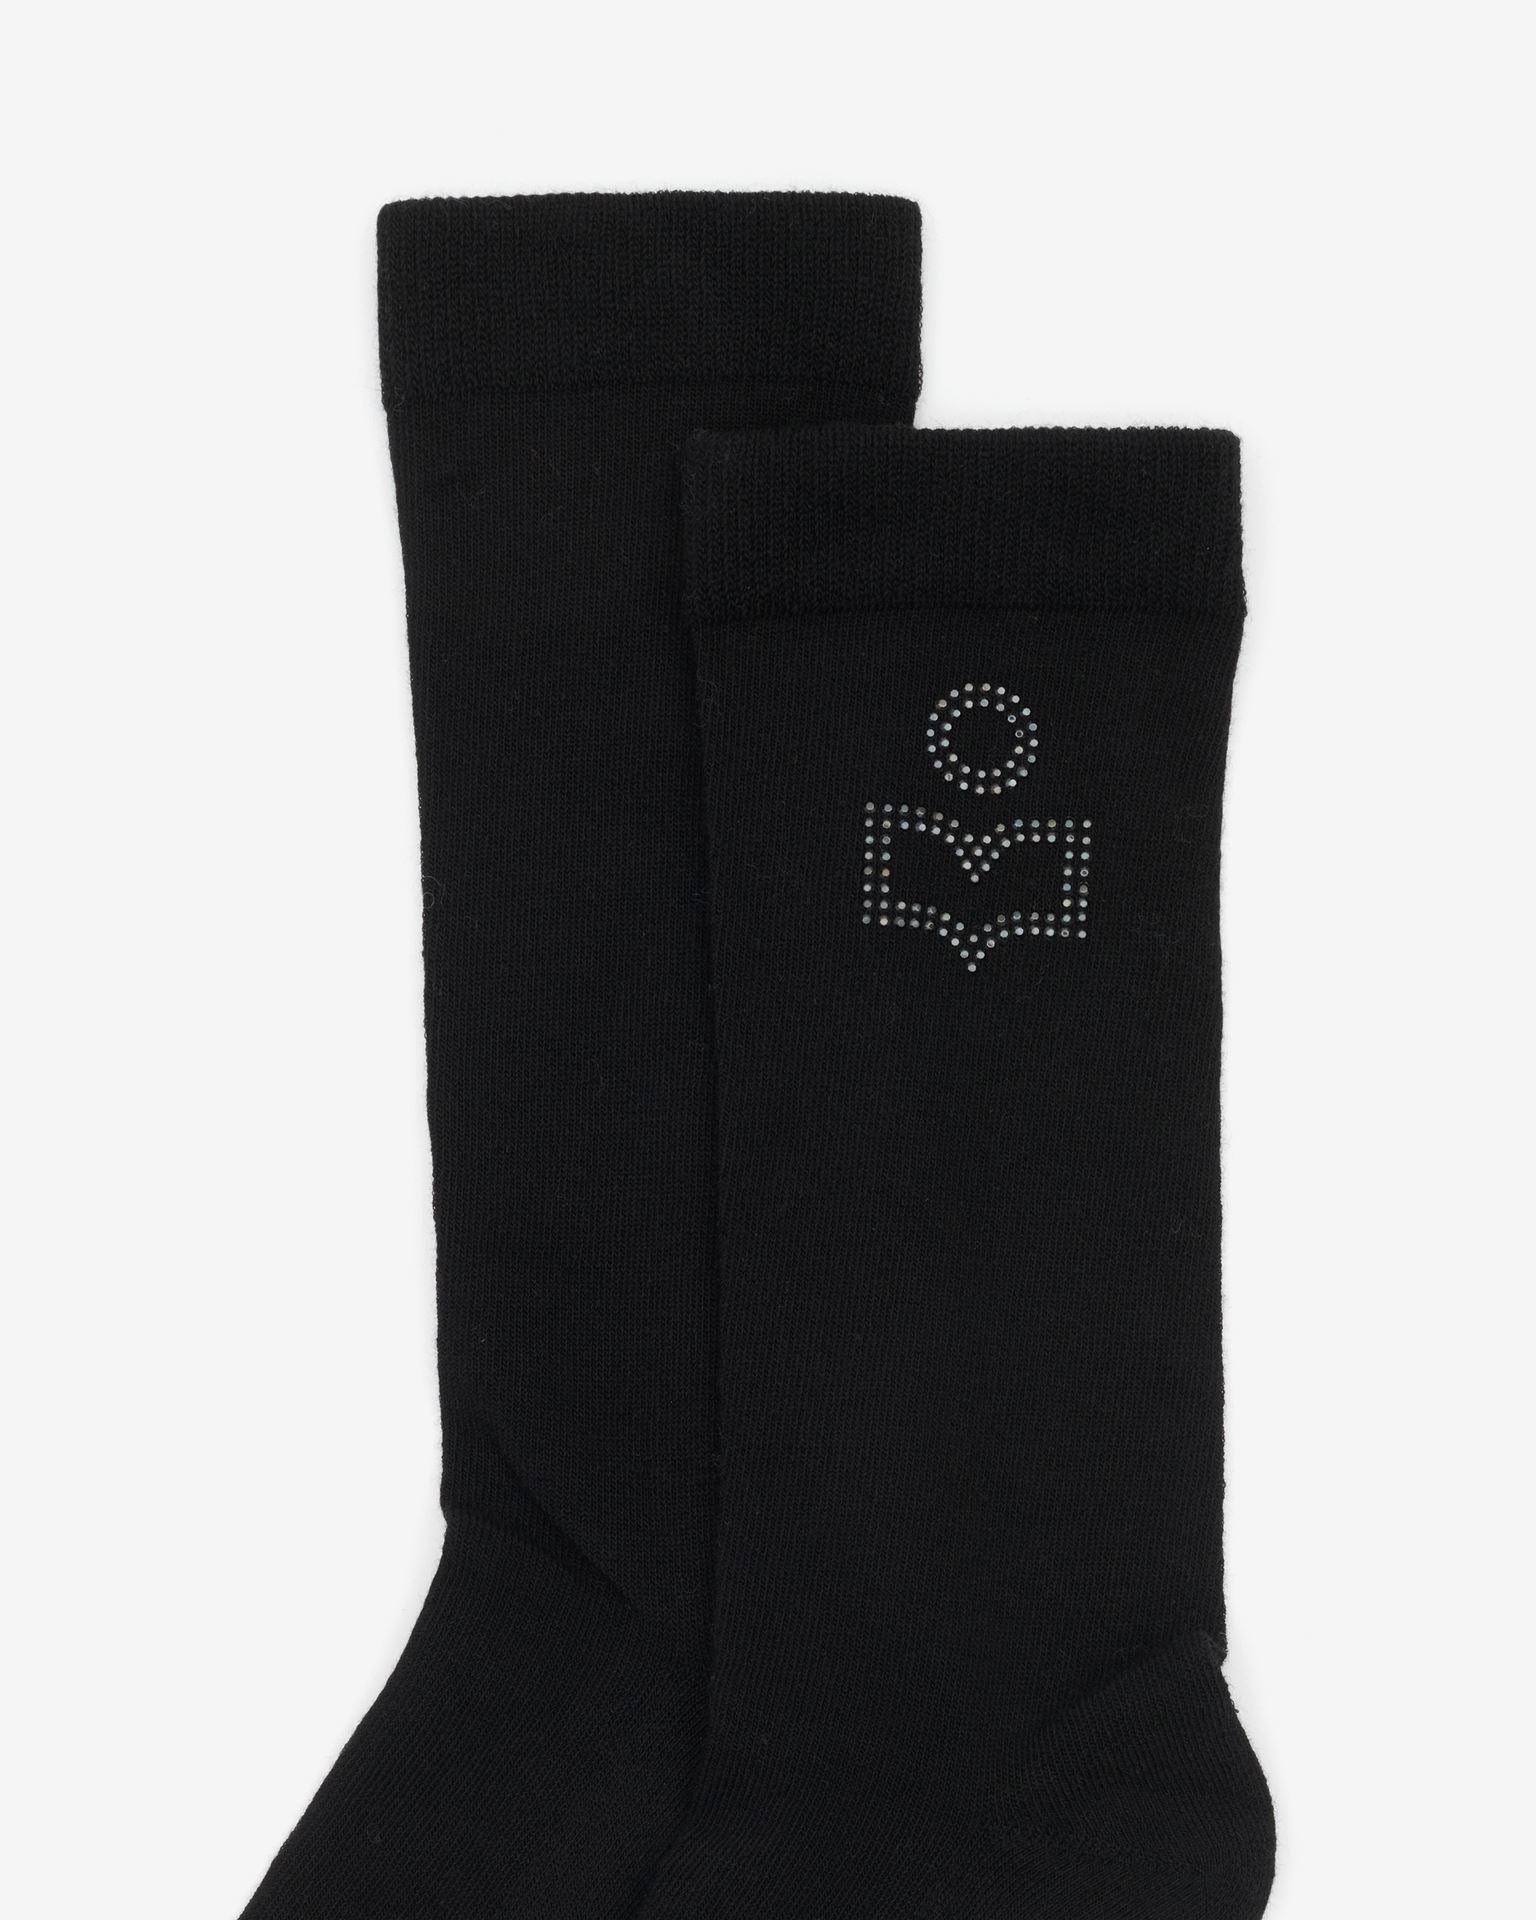 Zorana socks, black